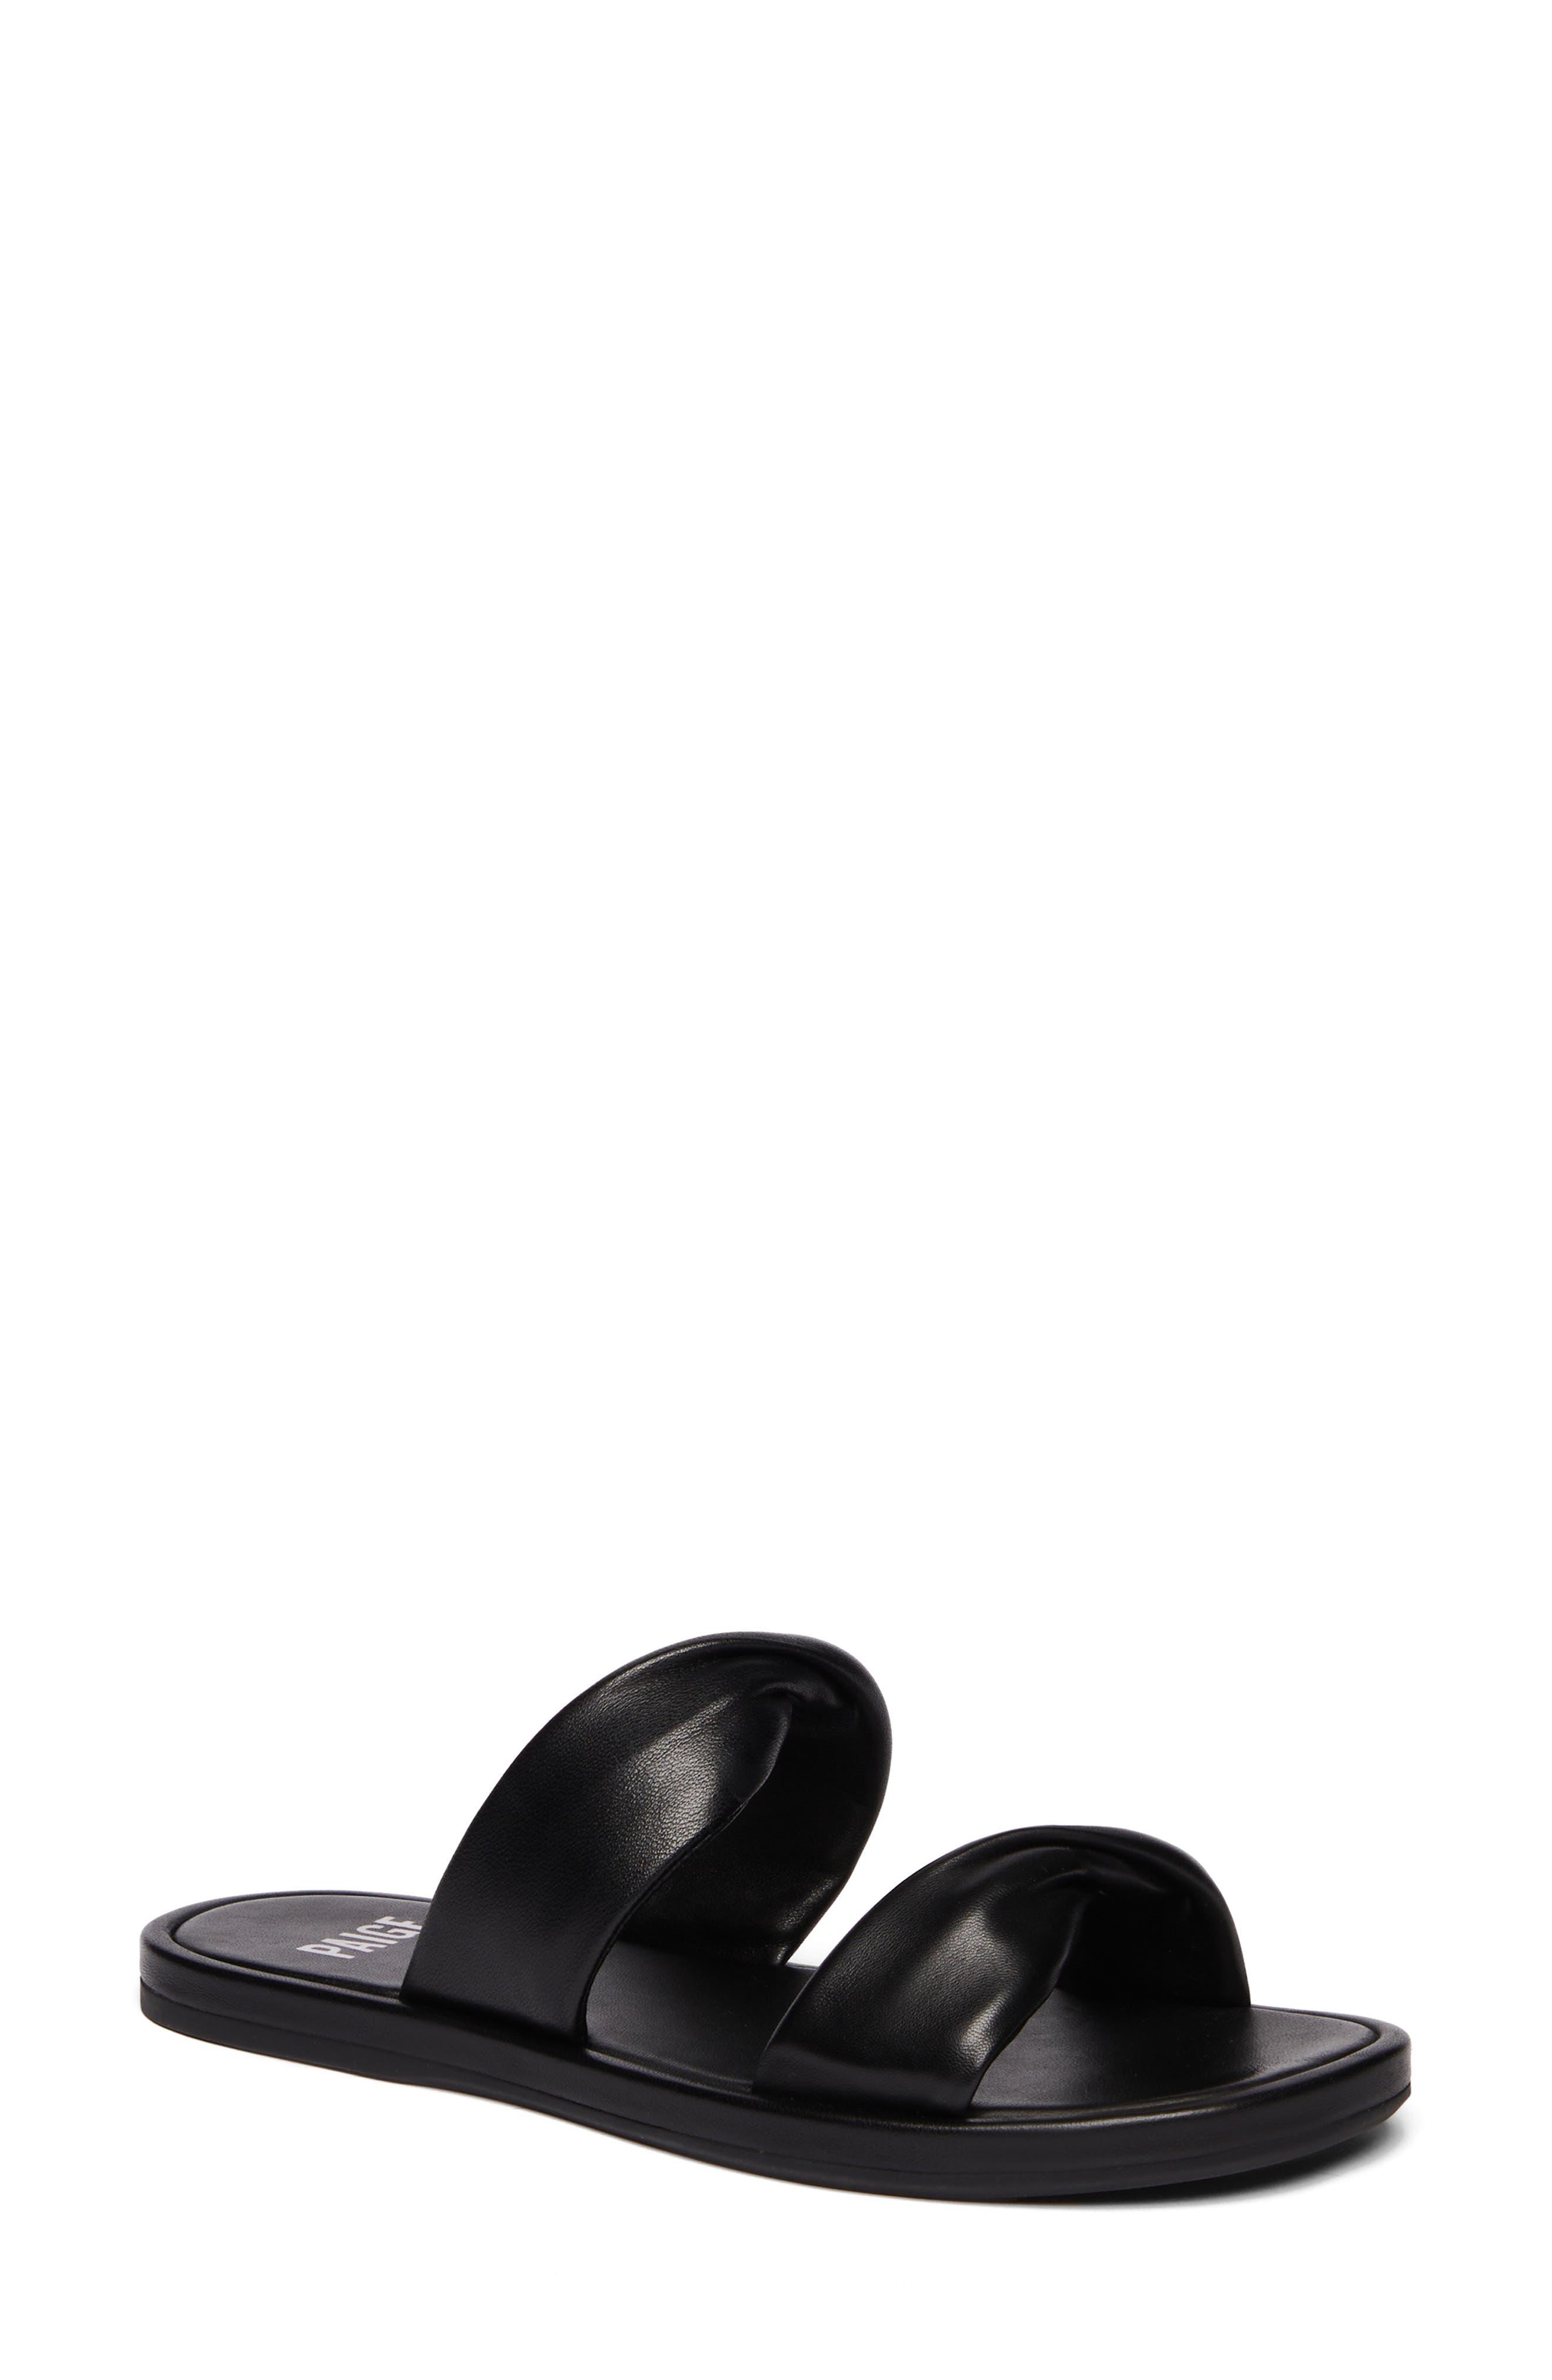 PAIGE Daria Slide Sandal in Black | Lyst